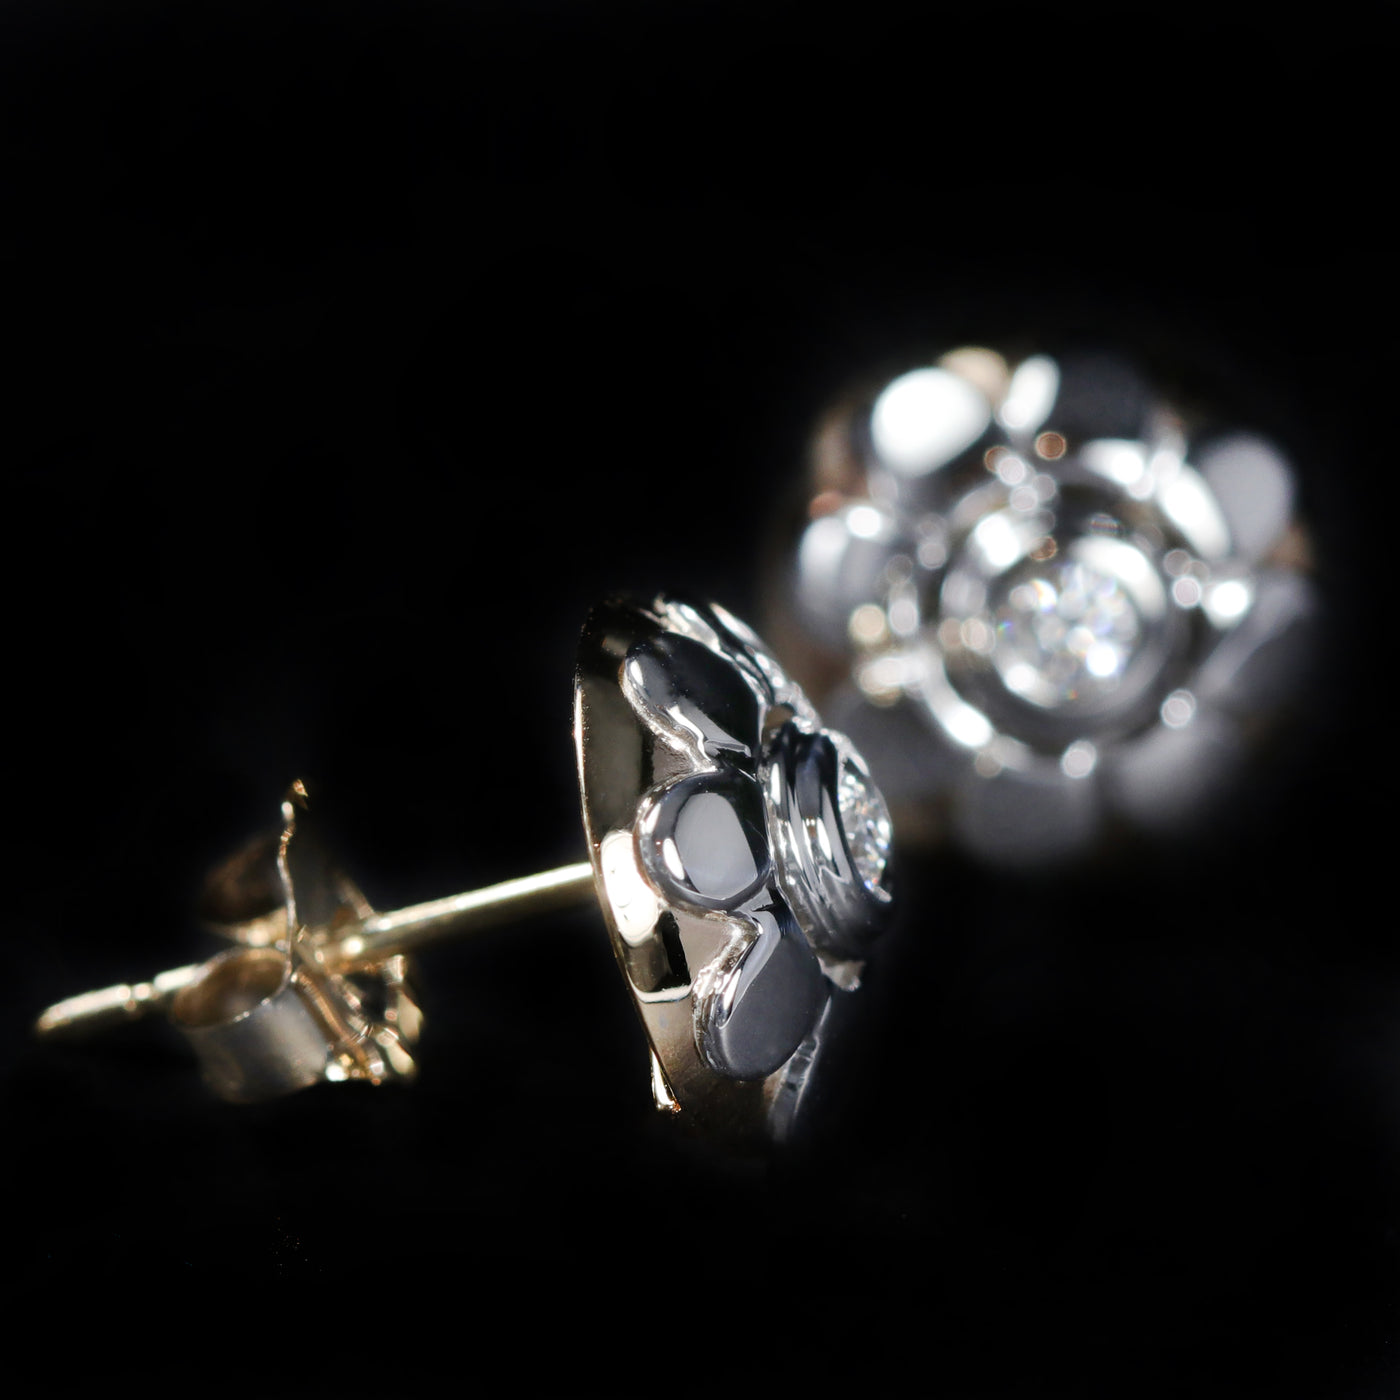 14K White Gold Round Brilliant Cut Diamond Flower Earrings